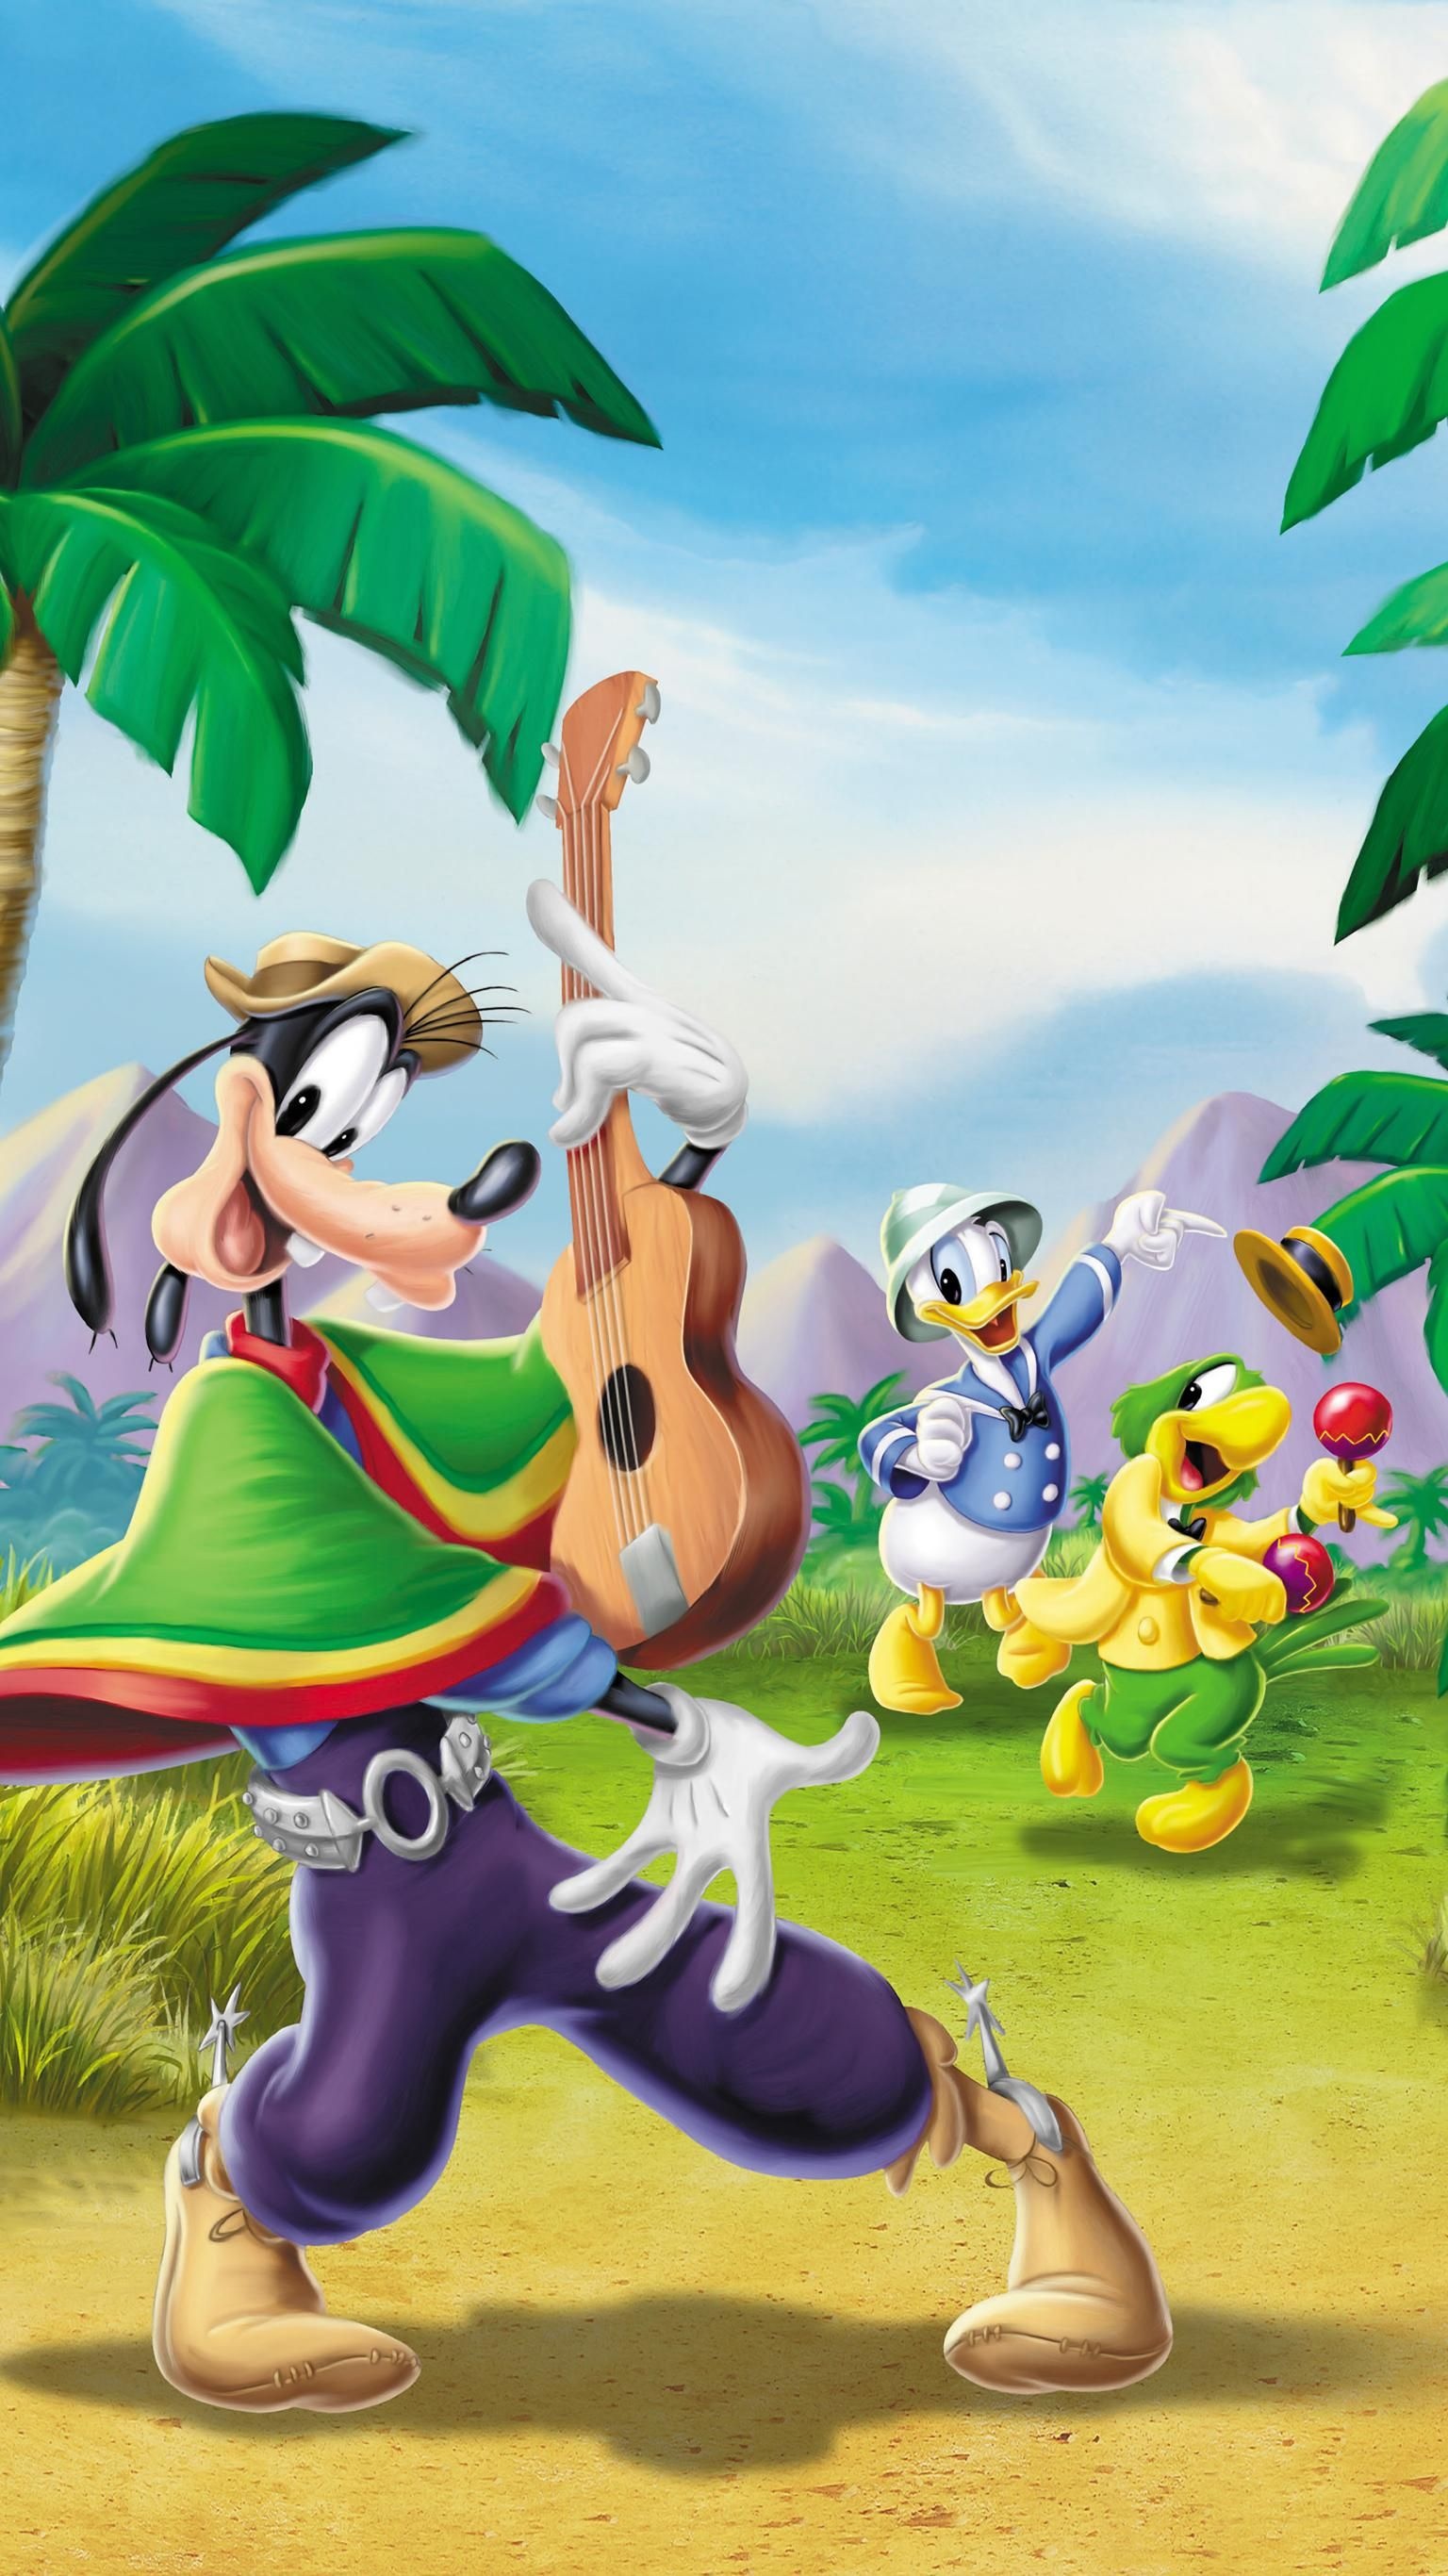 Goofy, Saludos Amigos, Disney wallpaper, Papel tapiz Disney, 1540x2740 HD Handy